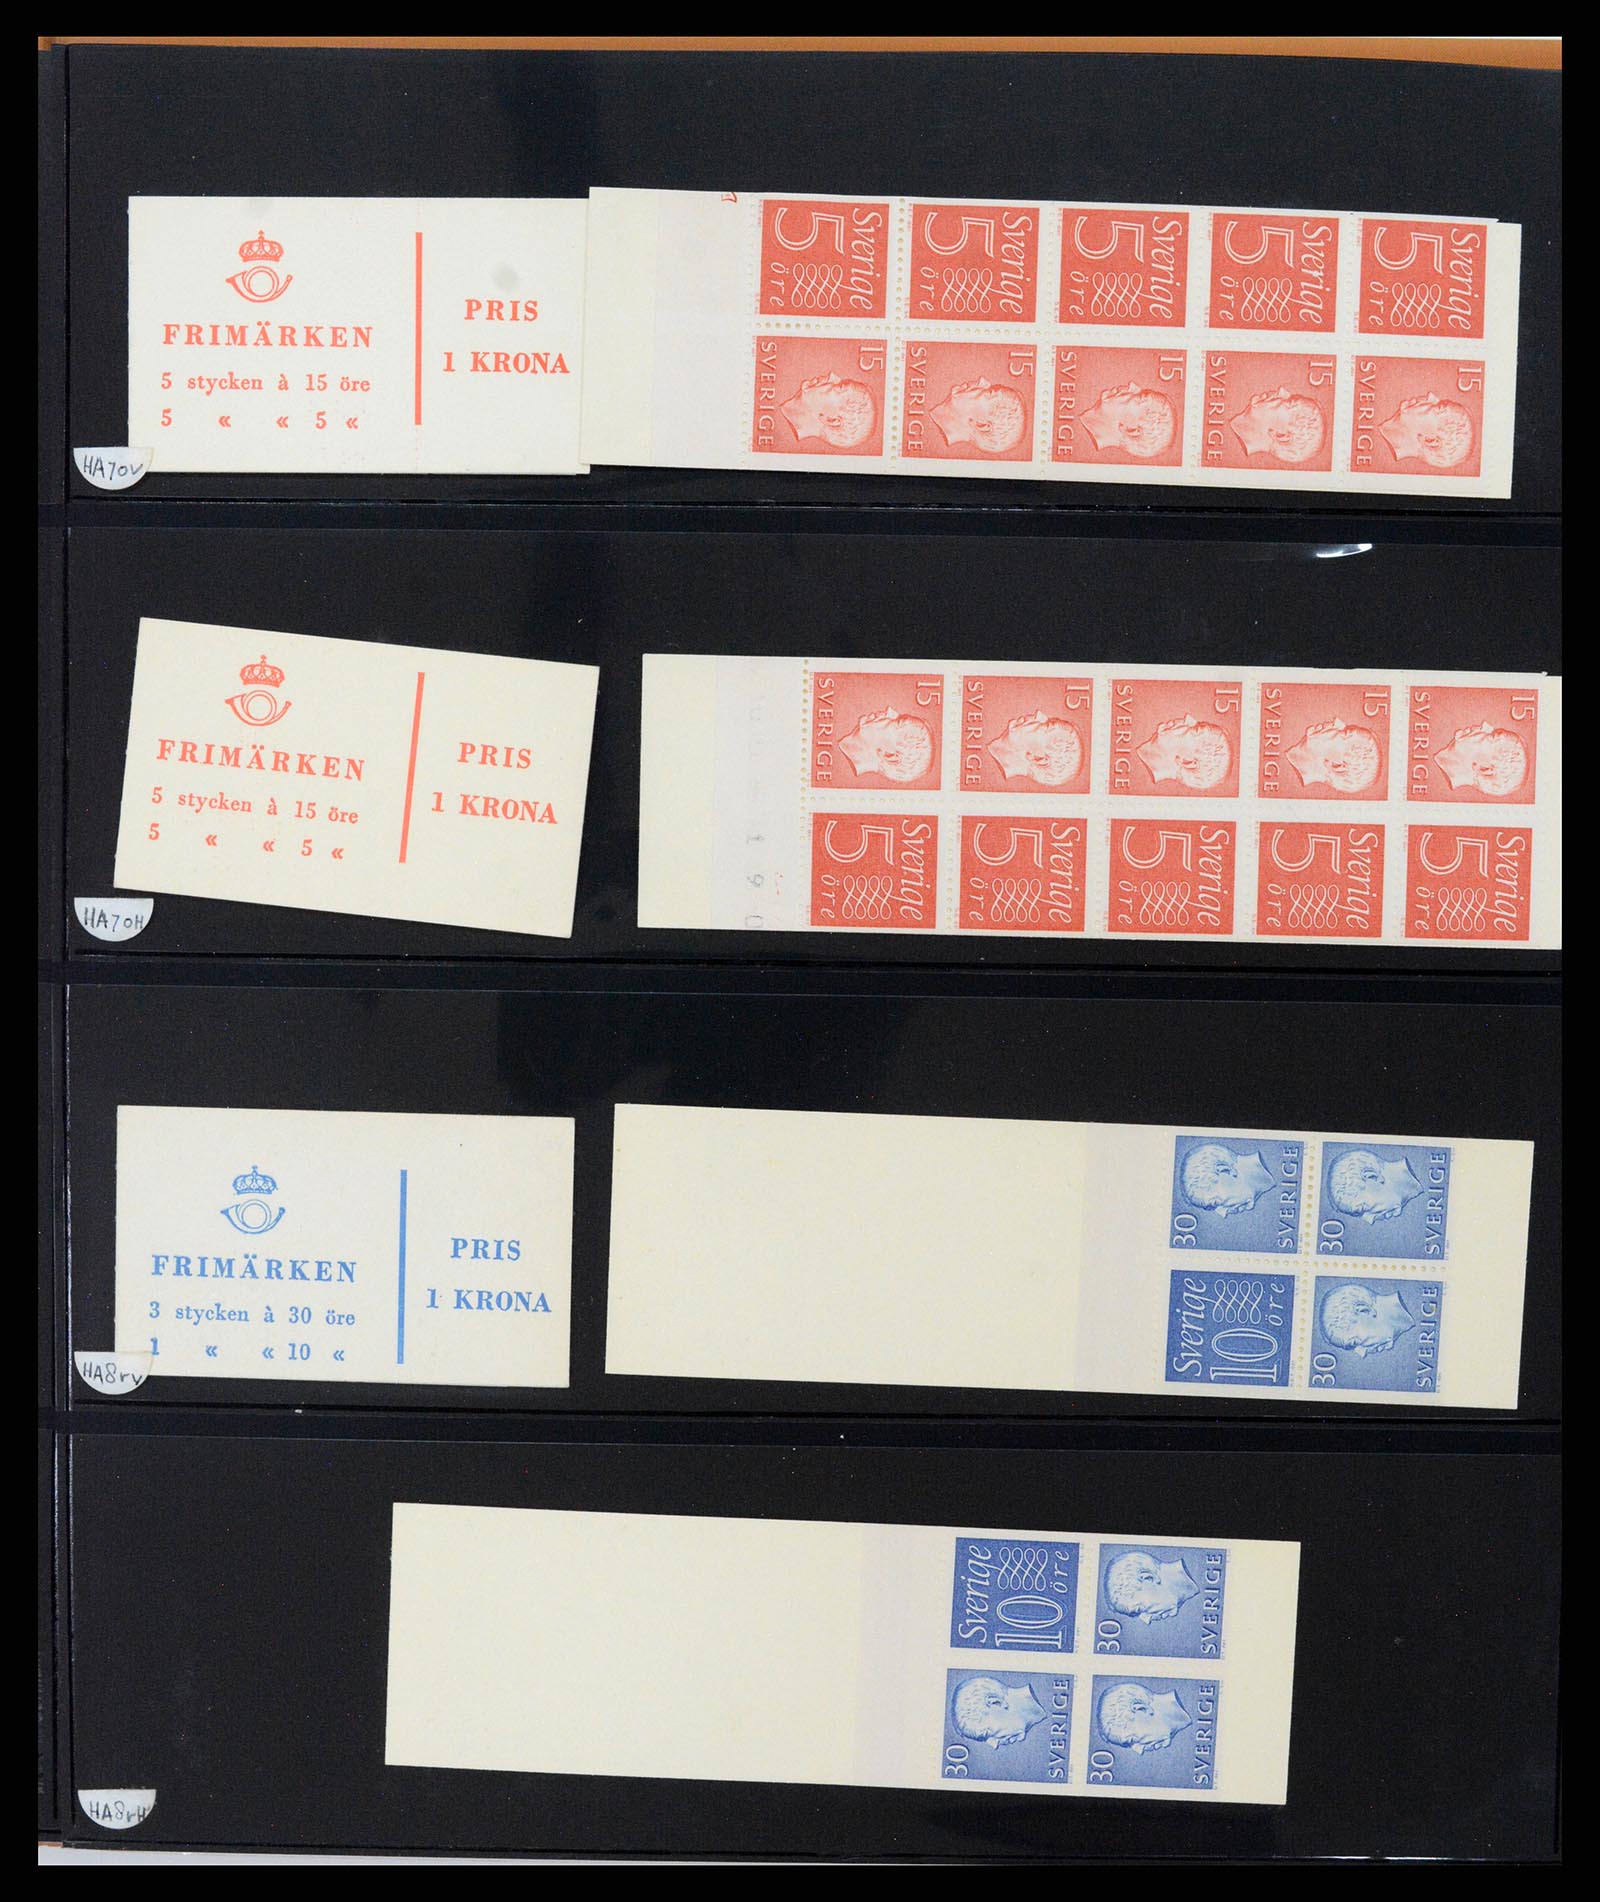 37345 060 - Stamp collection 37345 European countries souvenir sheets.